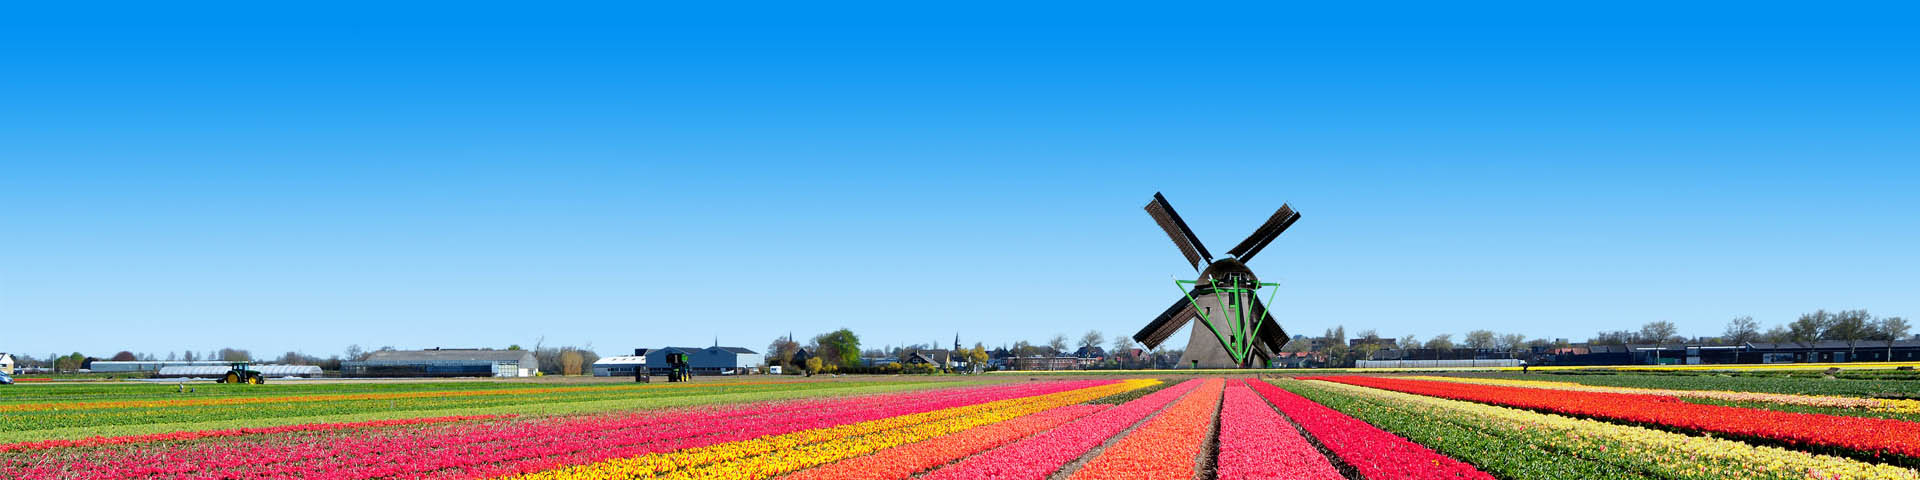 Tulpenvelden en molen in Nederland